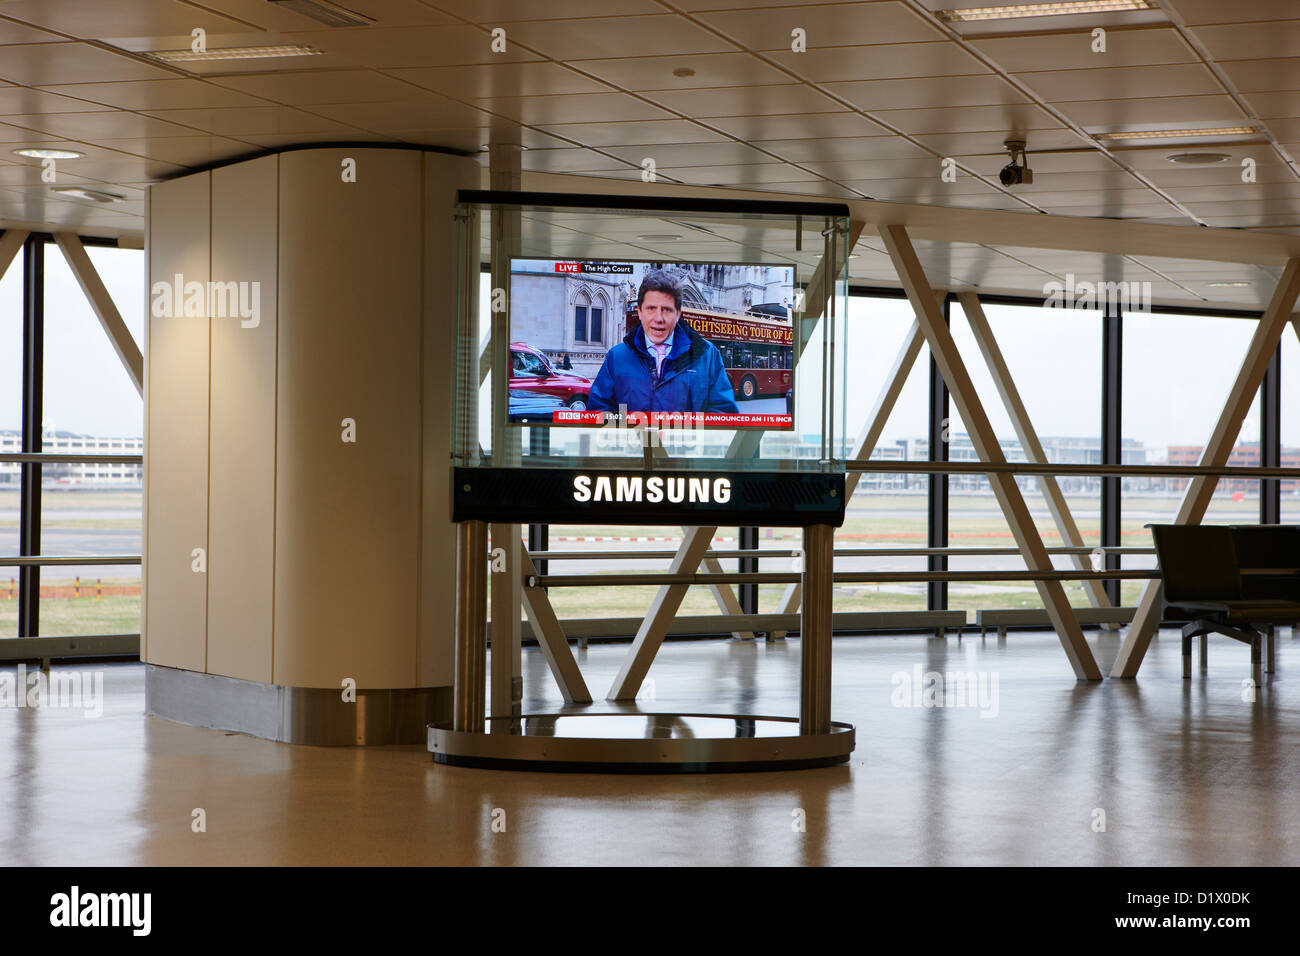 Samsung pannello di grandi dimensioni che mostra la televisione BBC news al terminal 1 terminal passeggeri la costruzione di Heathrow airport LONDON REGNO UNITO Foto Stock